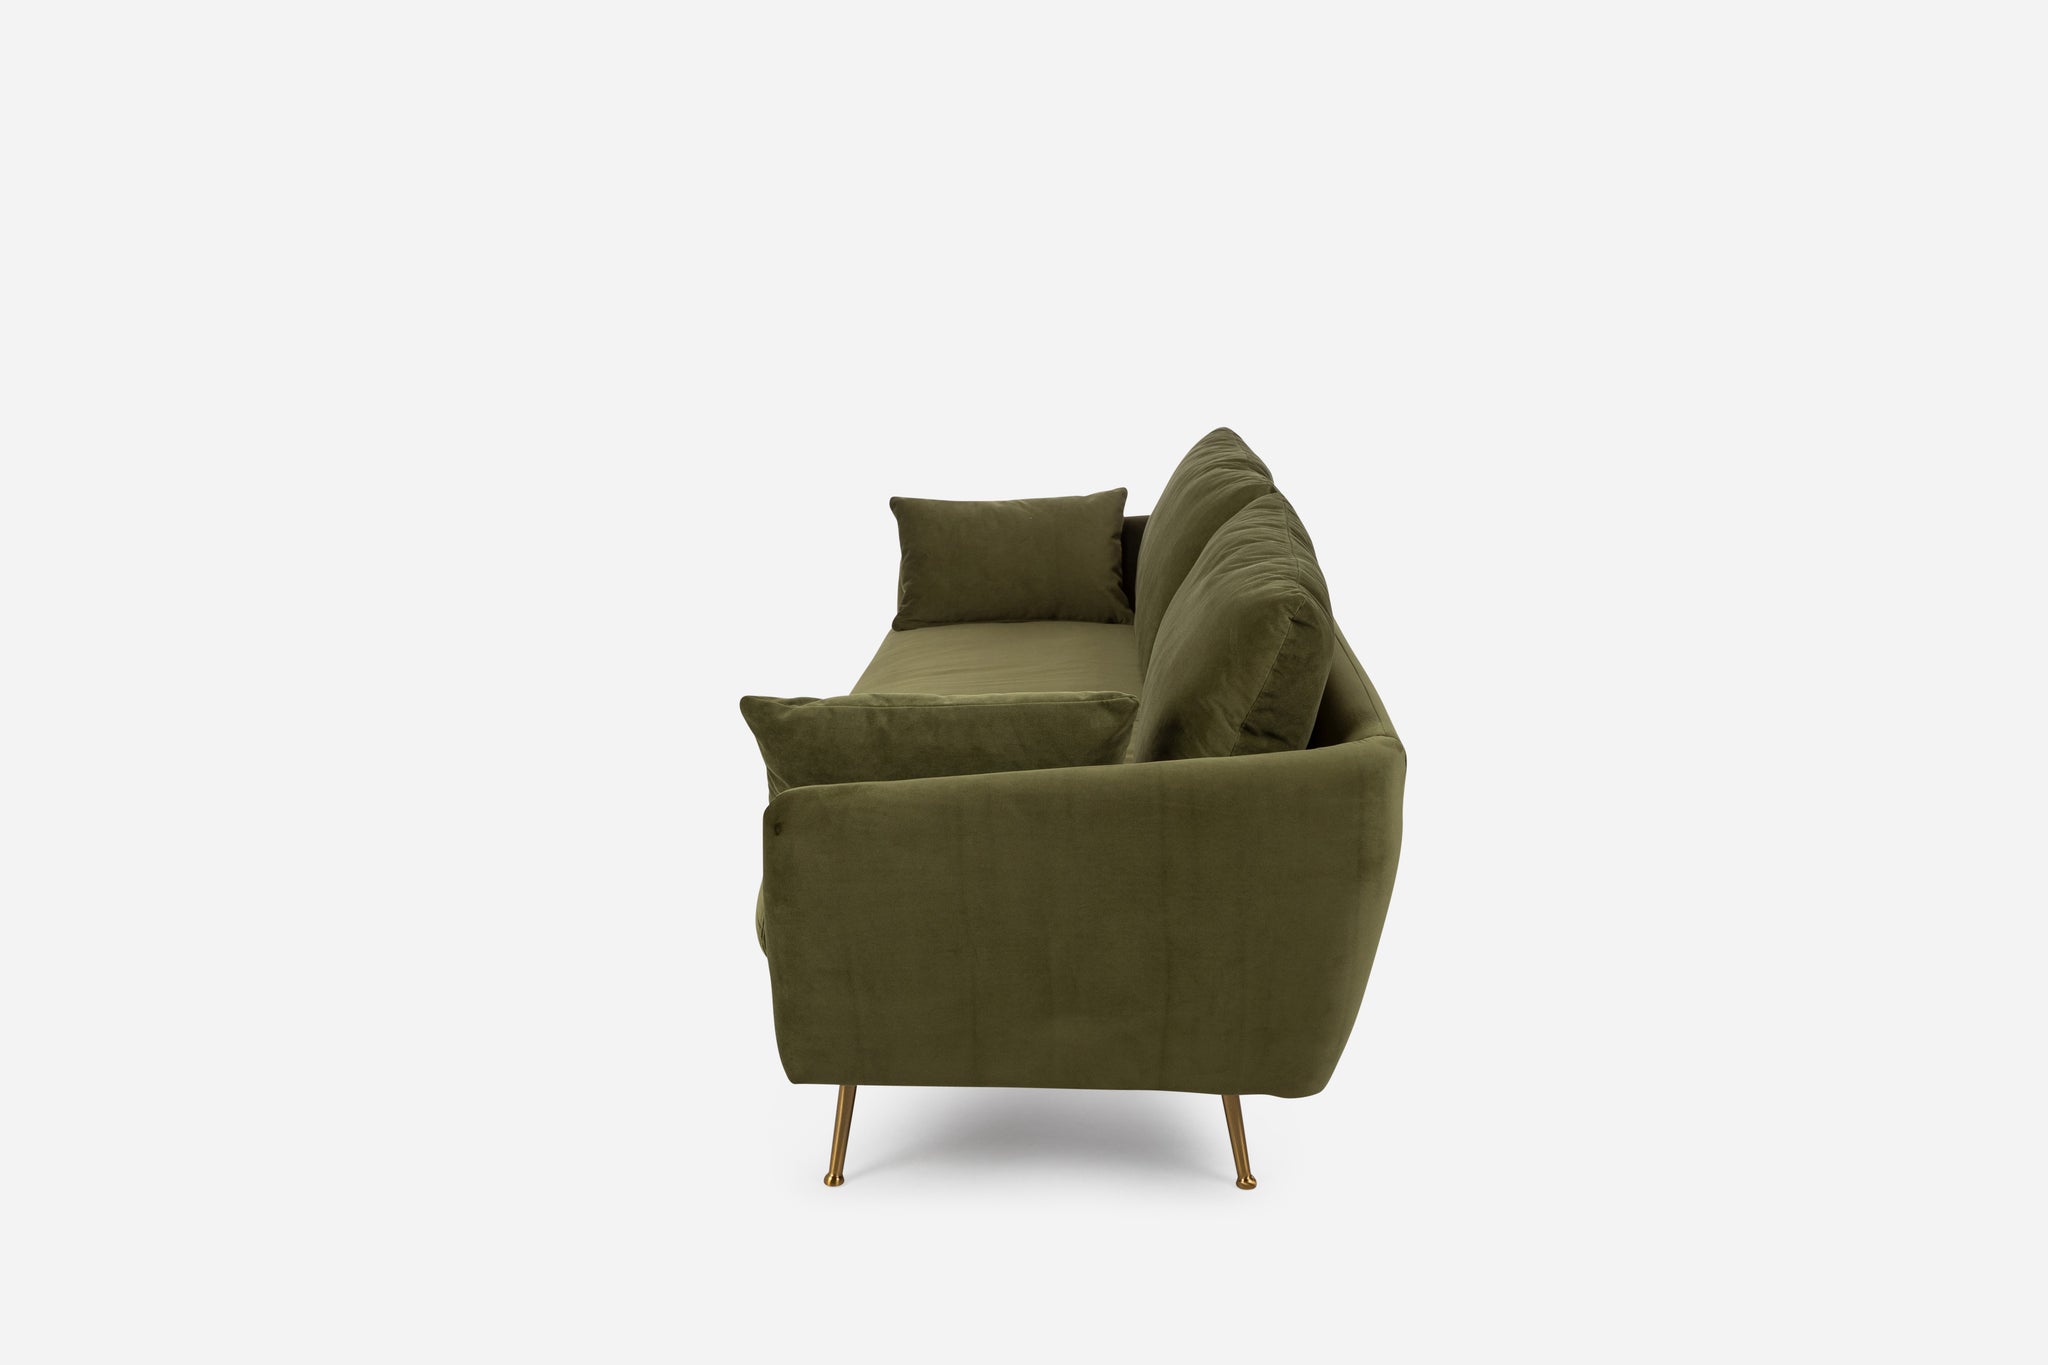 park sofa shown in olive velvet with gold legs